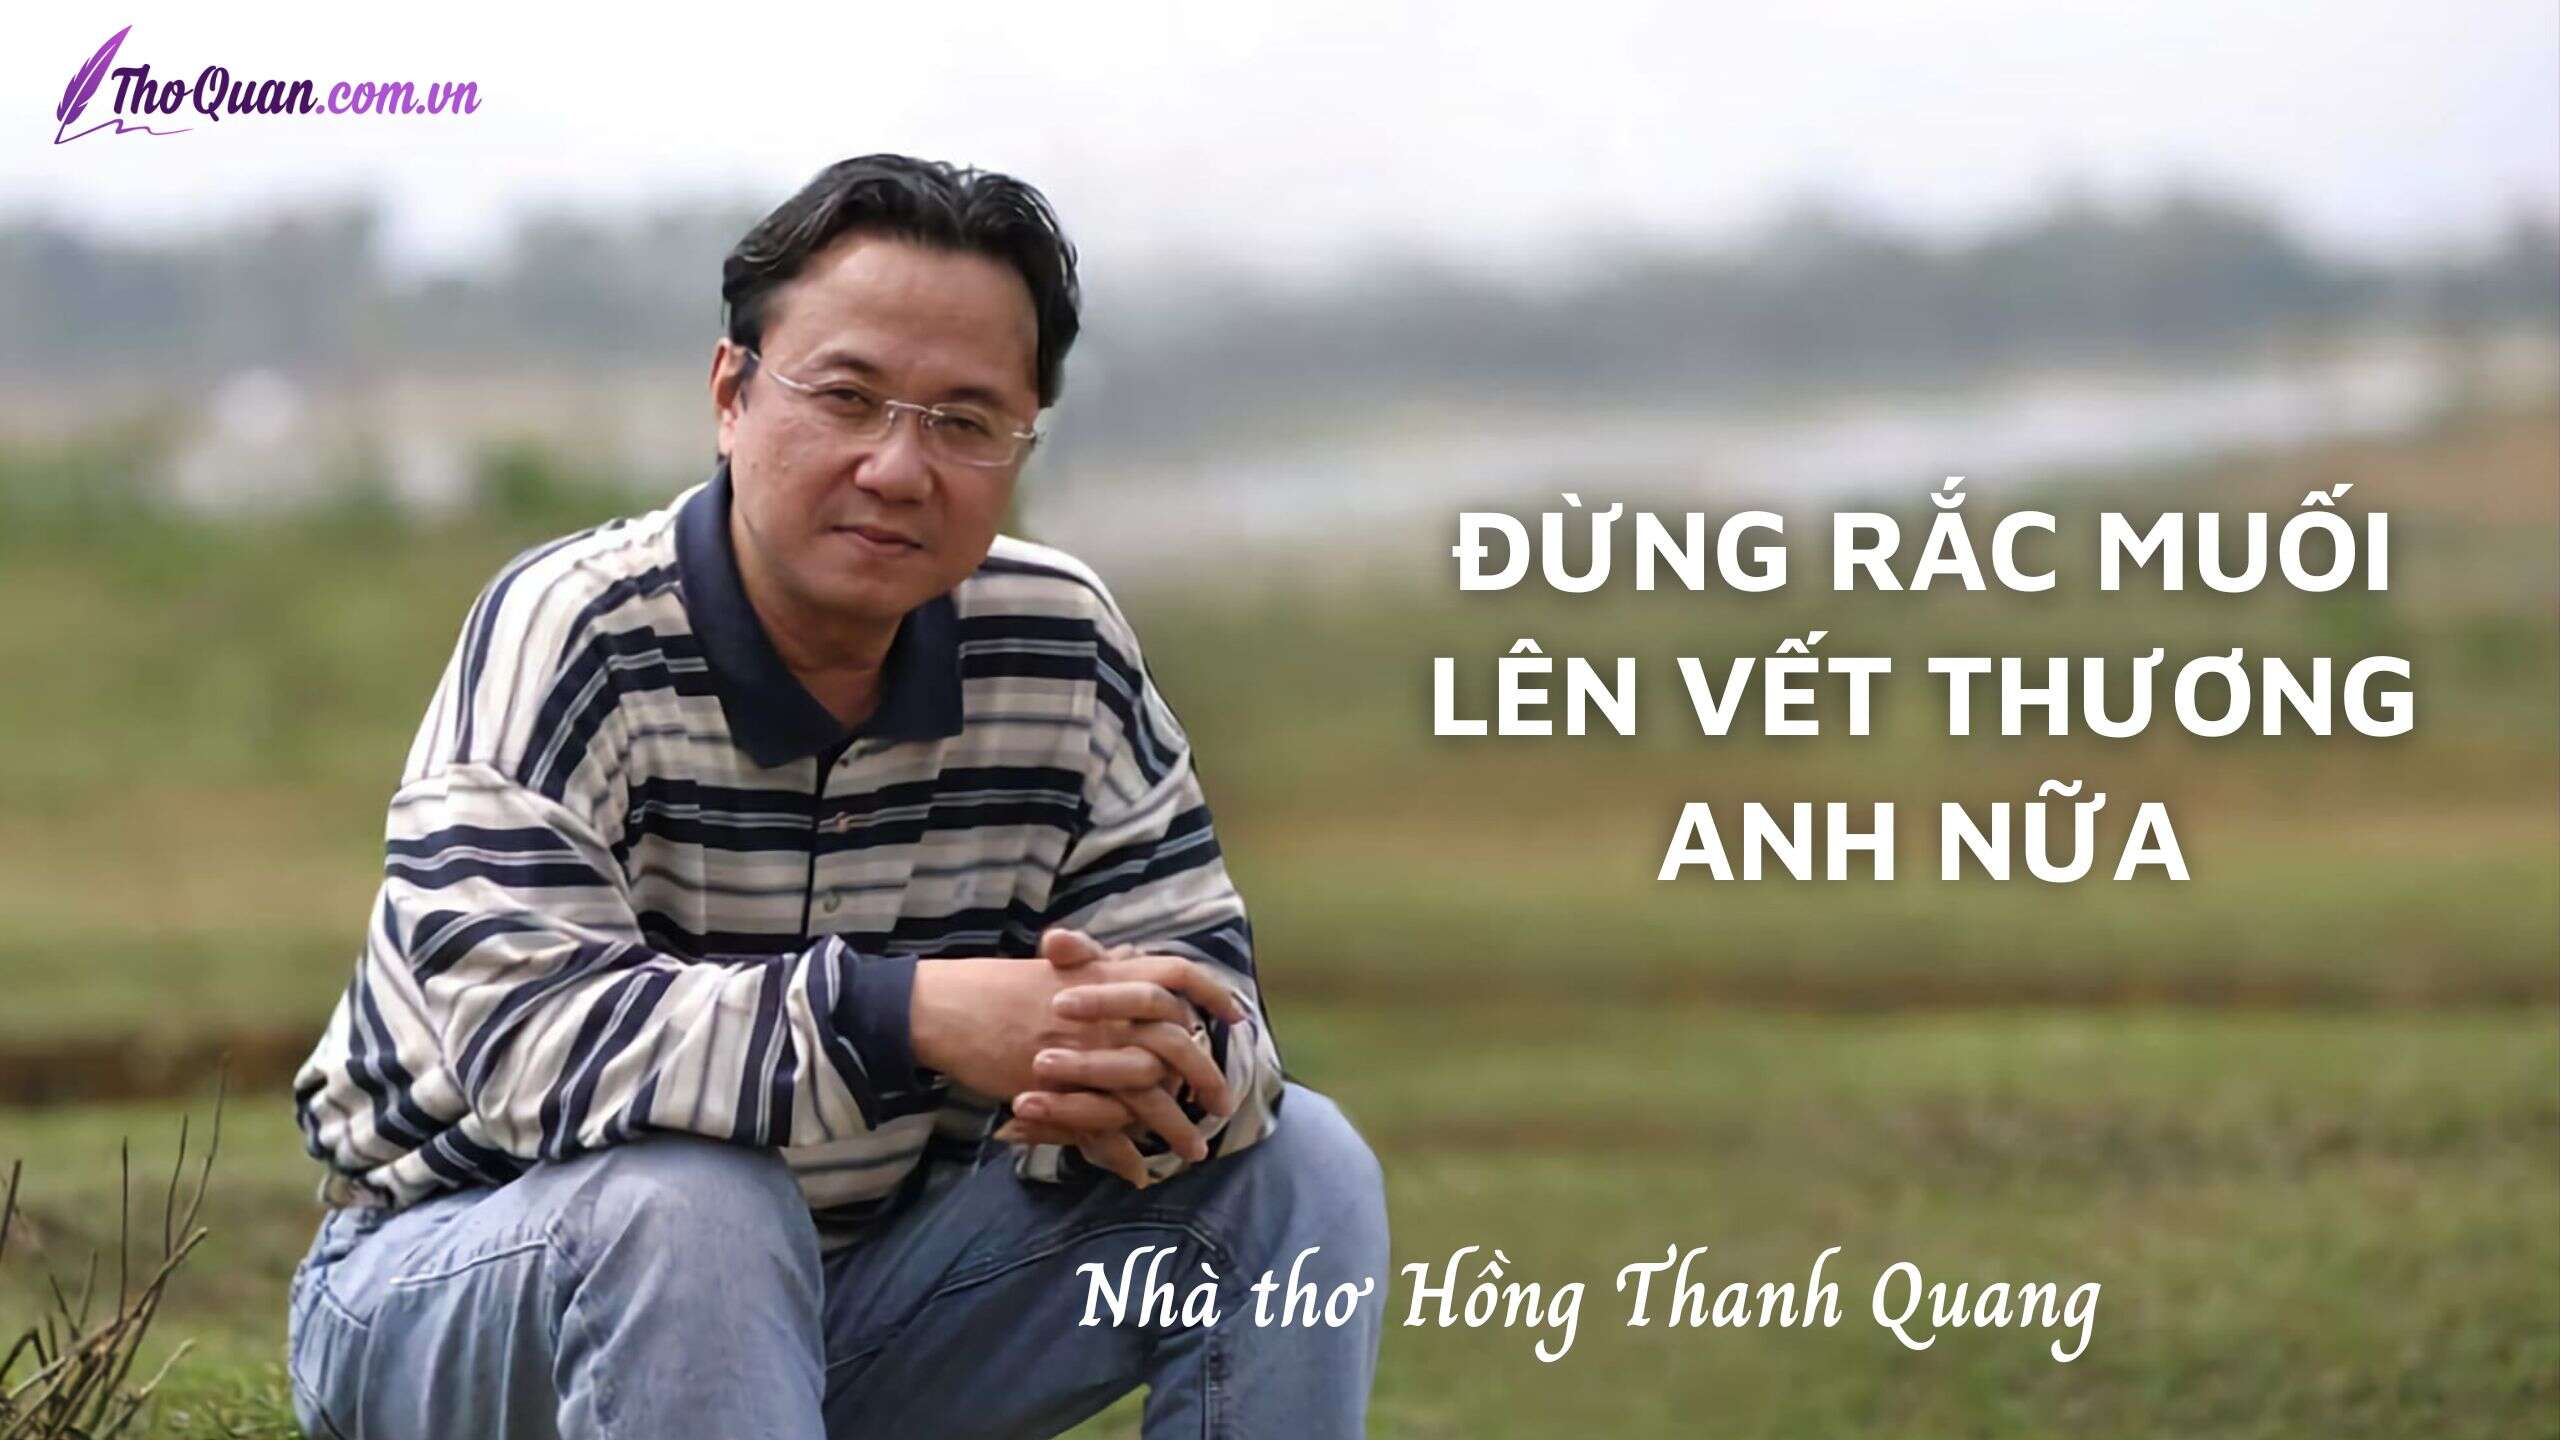 Hồng Thanh Quang